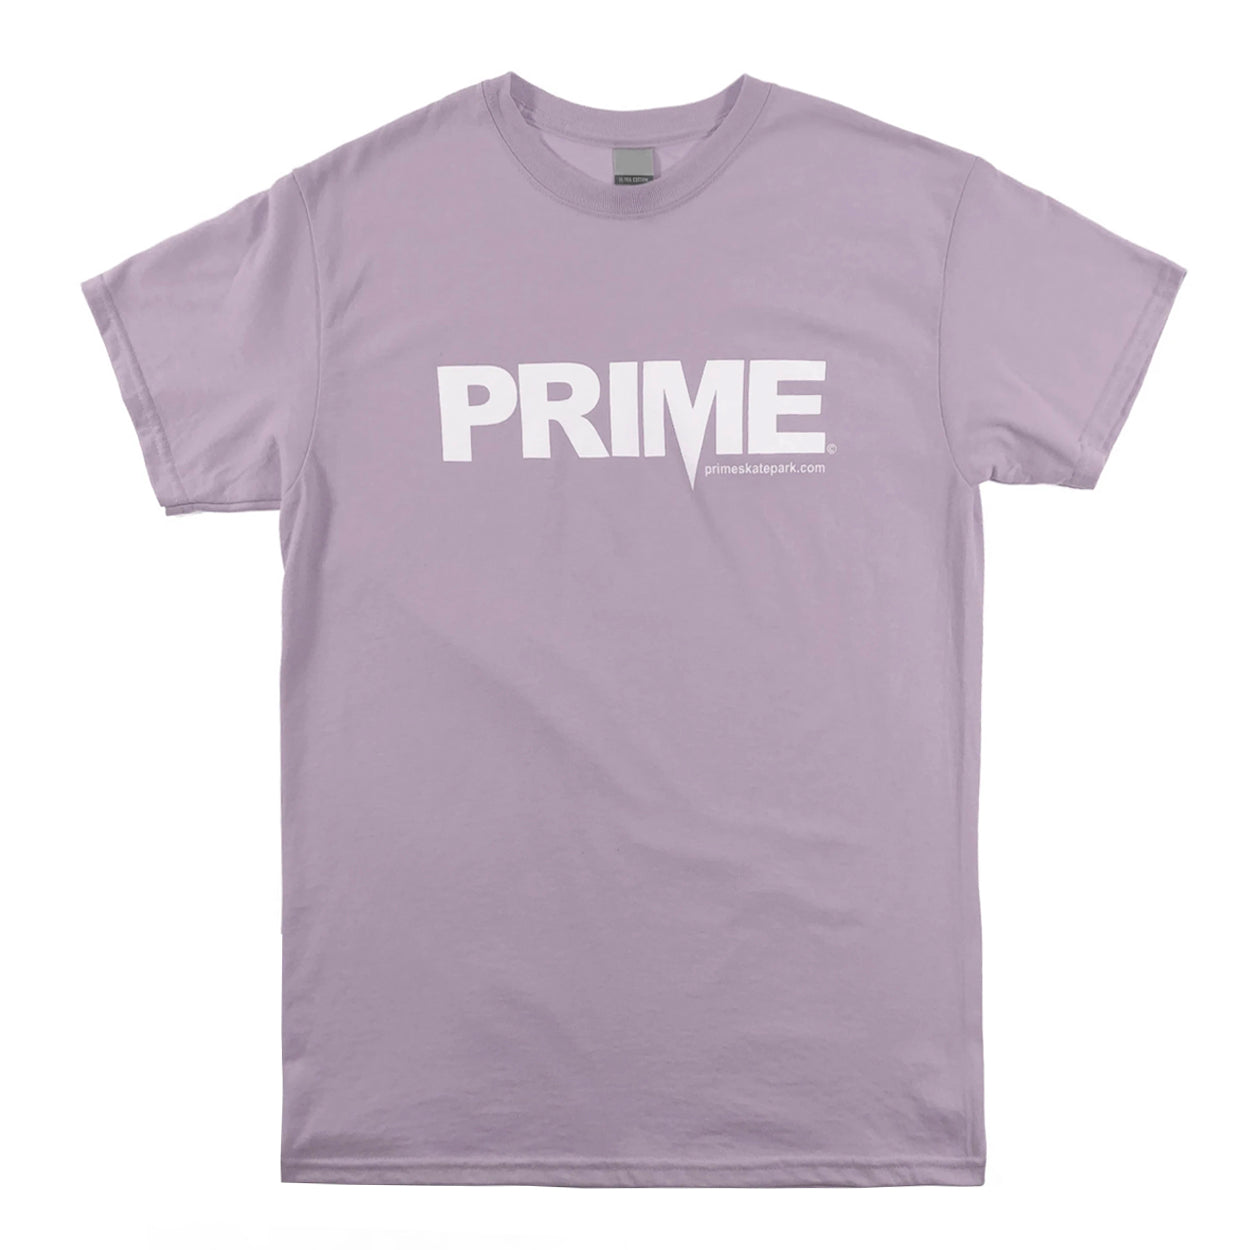 Prime Delux OG Logo T Shirt - Lavender / Burnout - Prime Delux Store